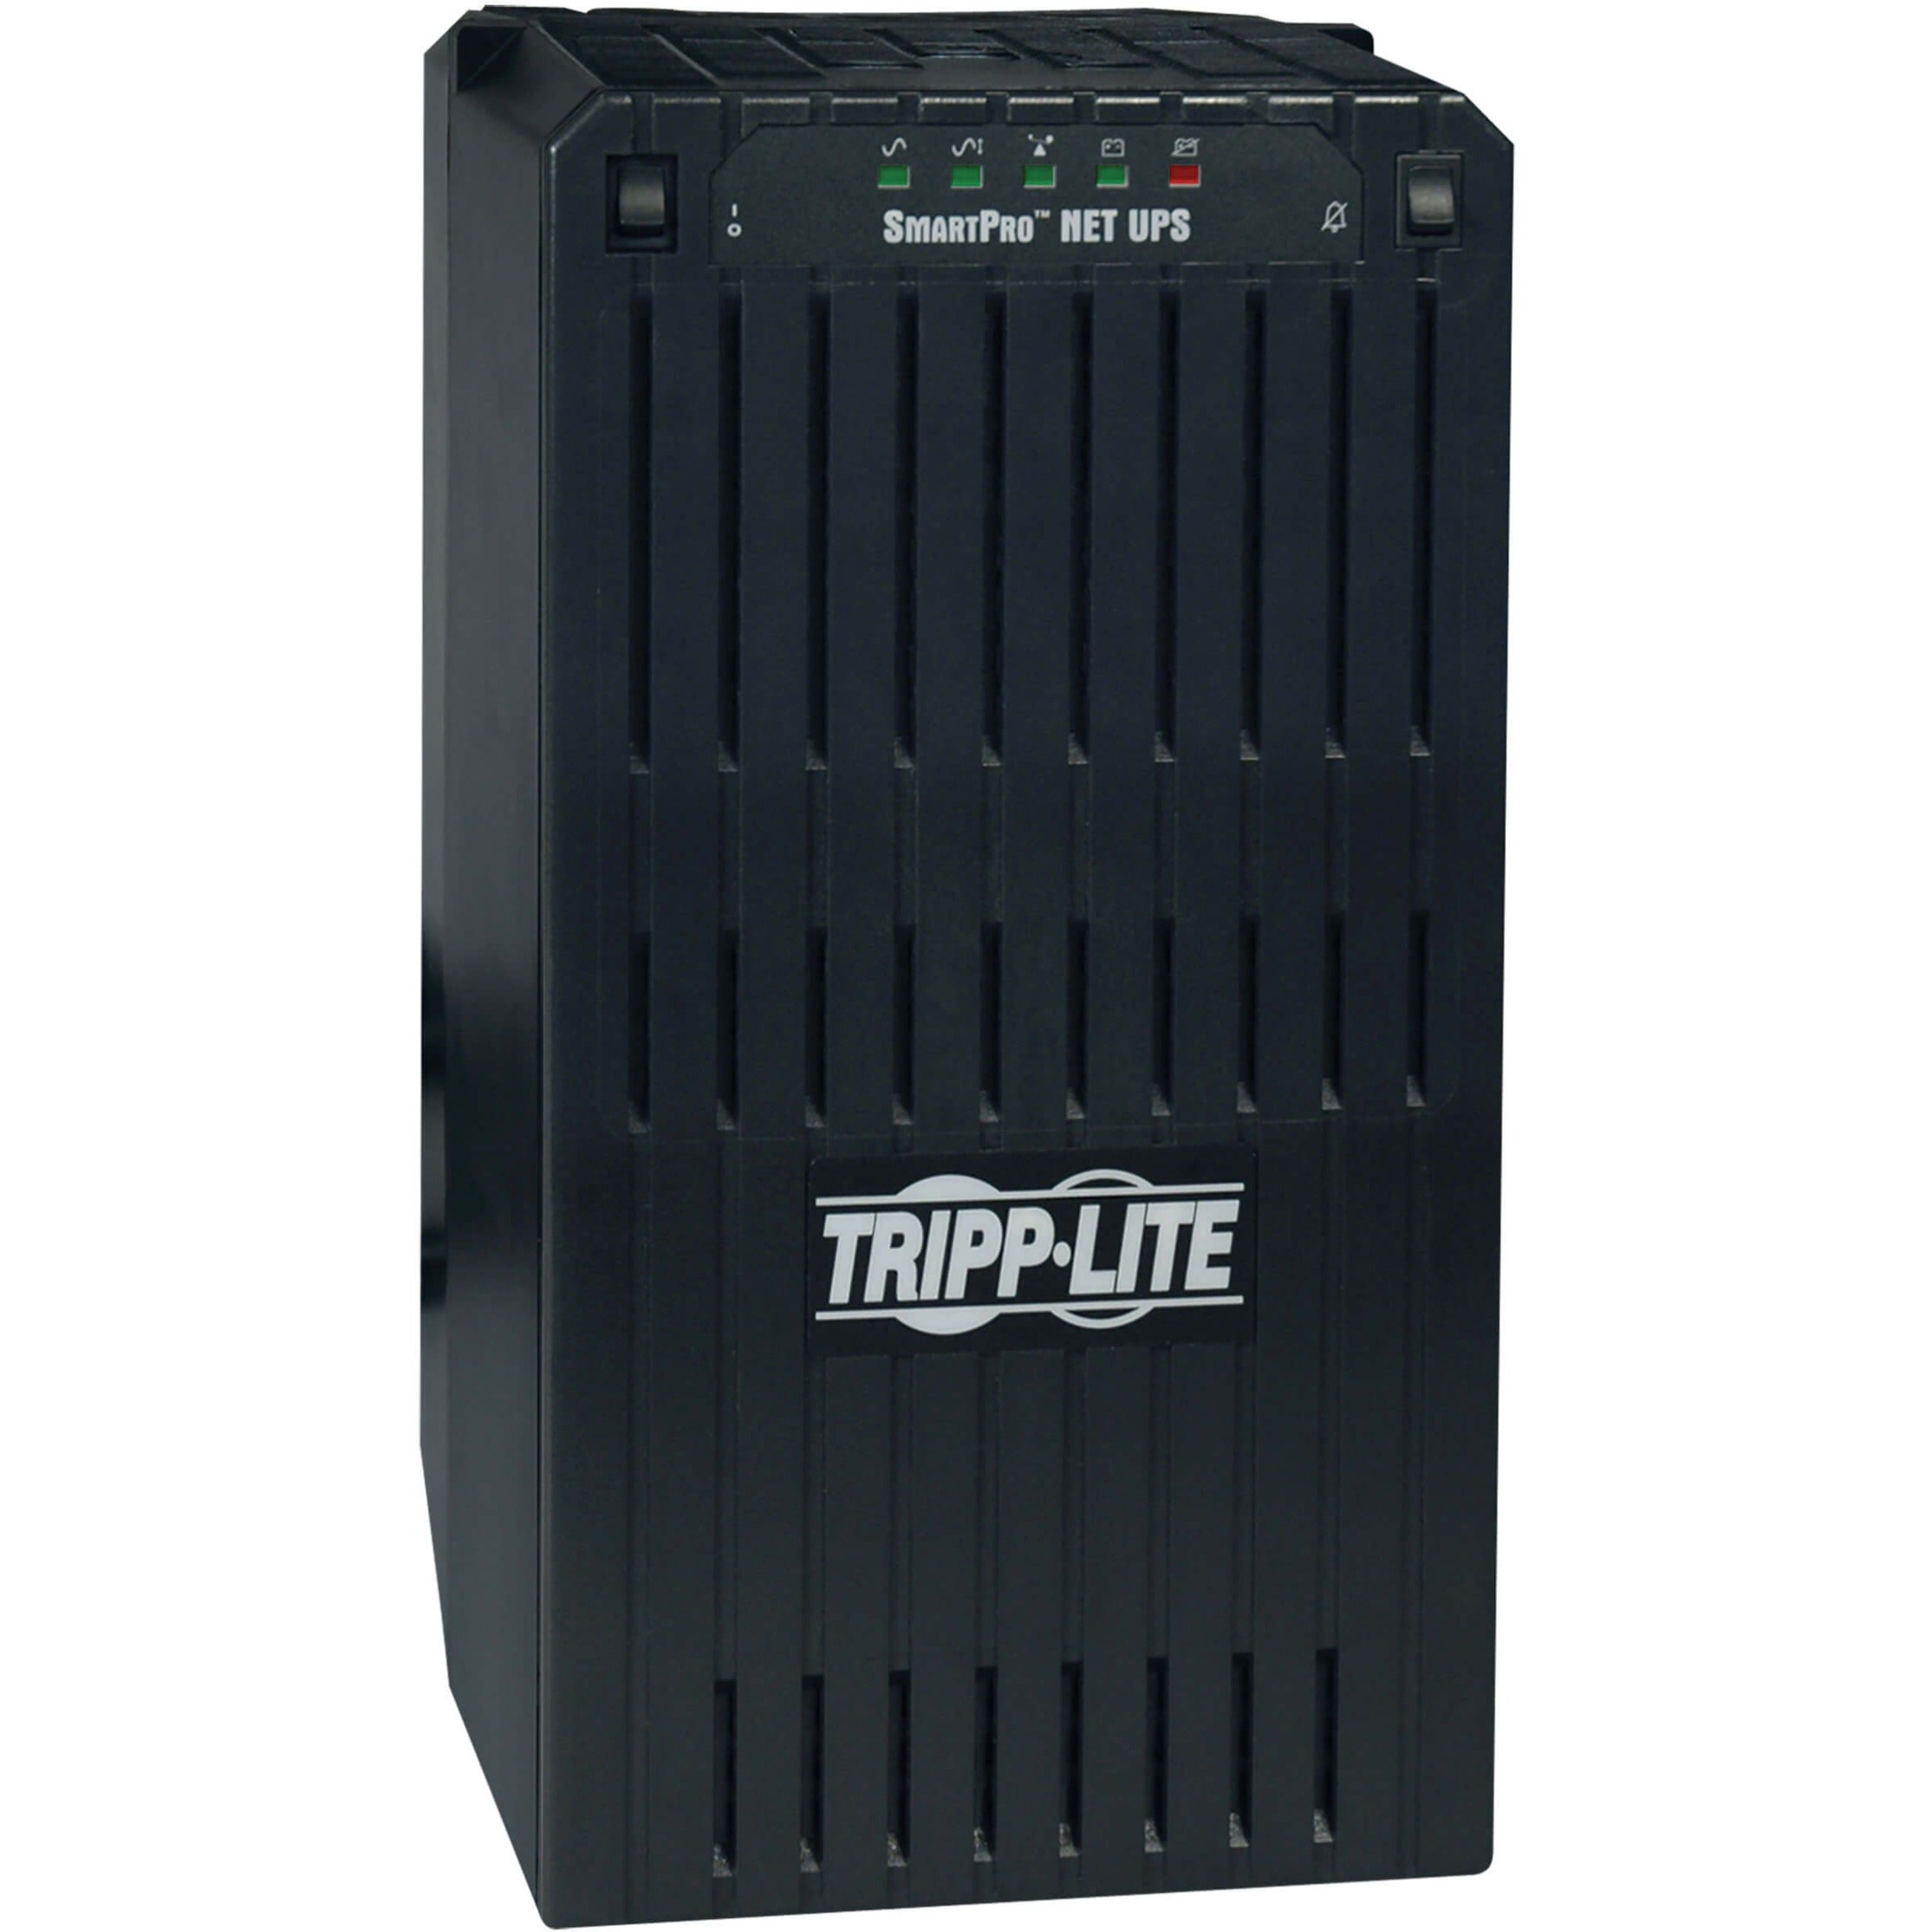 Tripp Lite SMART2200NET SmartPro 2200VA UPS, Backup Time 27Min, 6 Outlet, Black